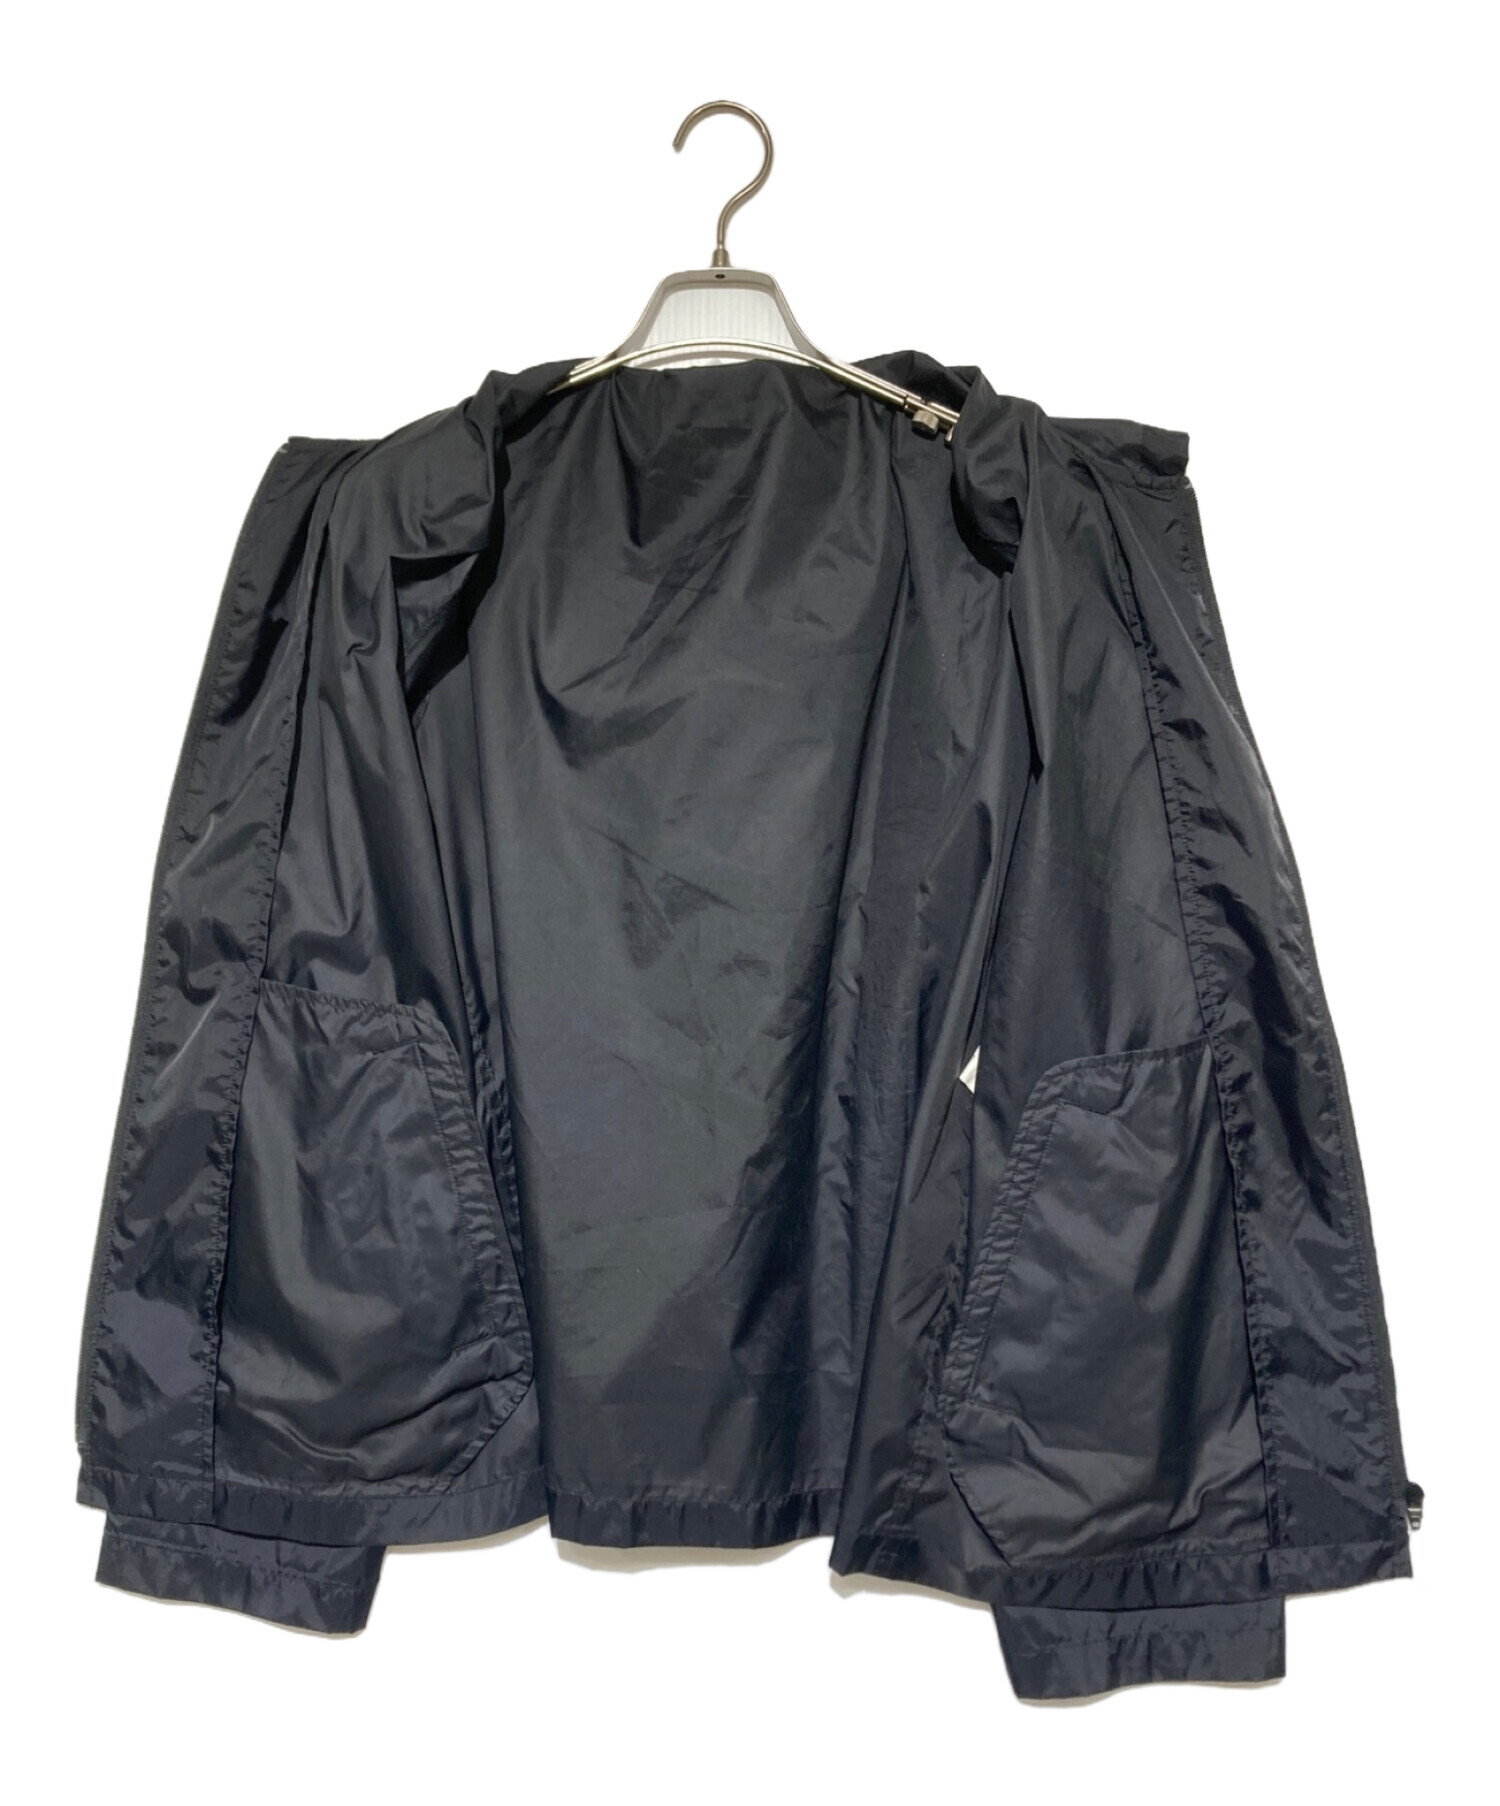 NIKE (ナイキ) BLACK COMME des GARCONS (ブラック コムデギャルソン) ナイロンジャケット ブラック サイズ:XL